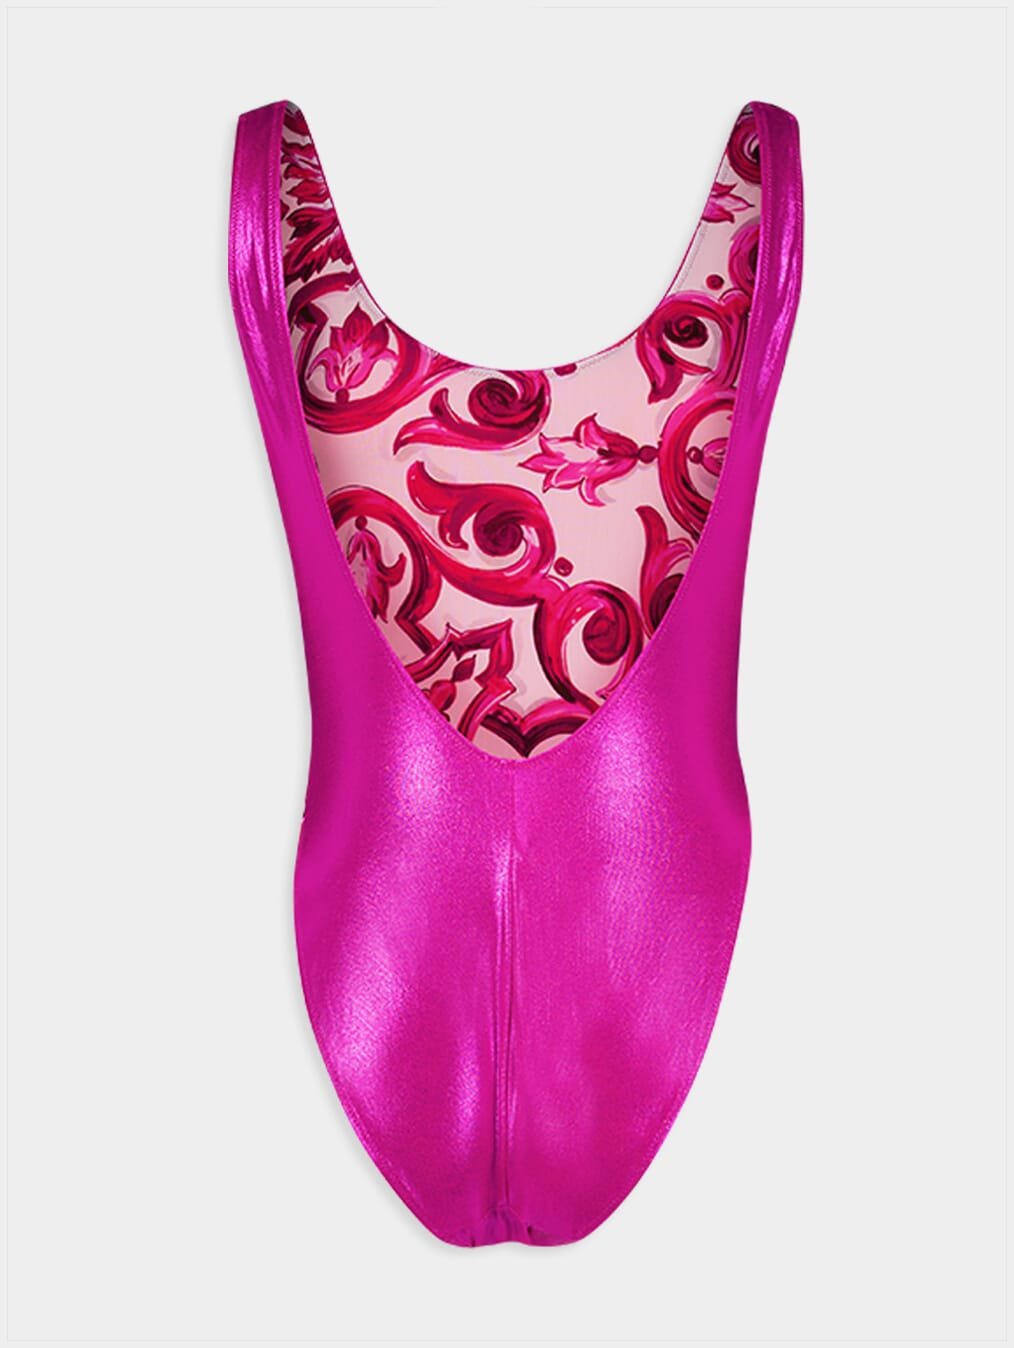 Dolce & GabbanaHigh-Shine One-Piece Swimsuit at Fashion Clinic